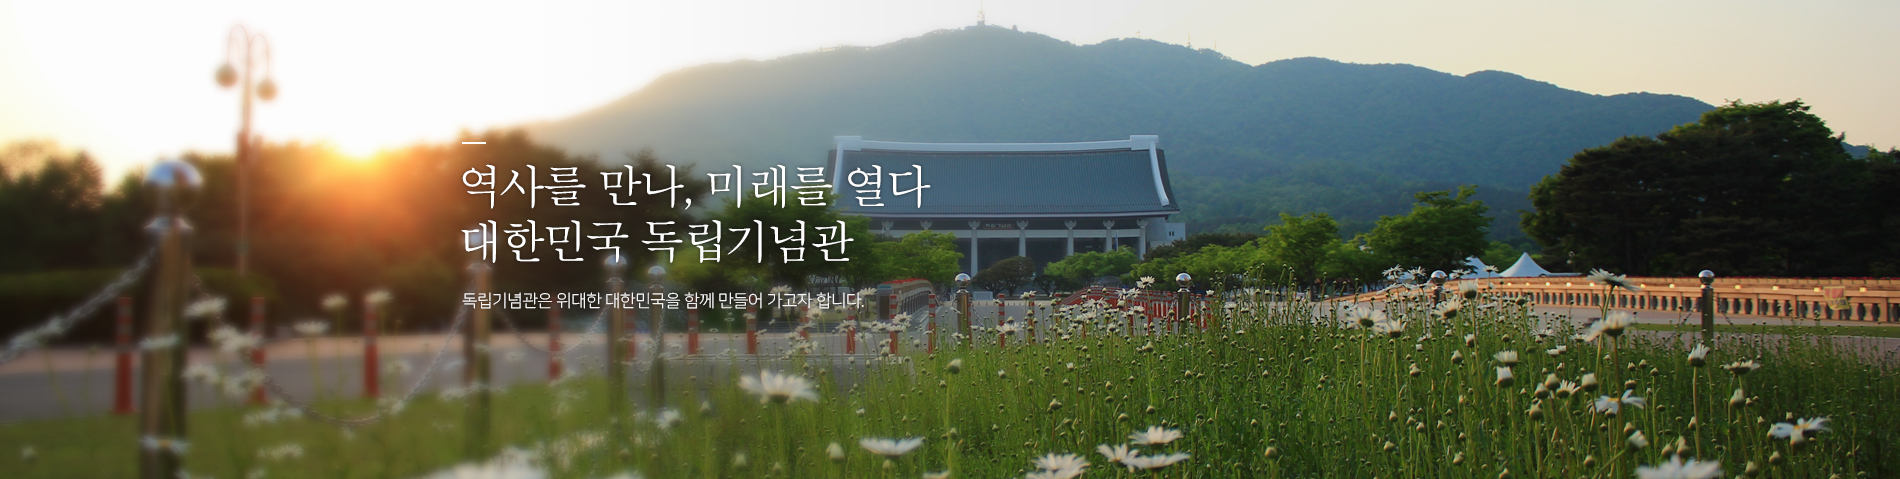 역사를만나, 미래를열다. 대한민국 독립기념관. 독립기념관은 위대한 대한민국을 함께 만들어가고자 합니다.